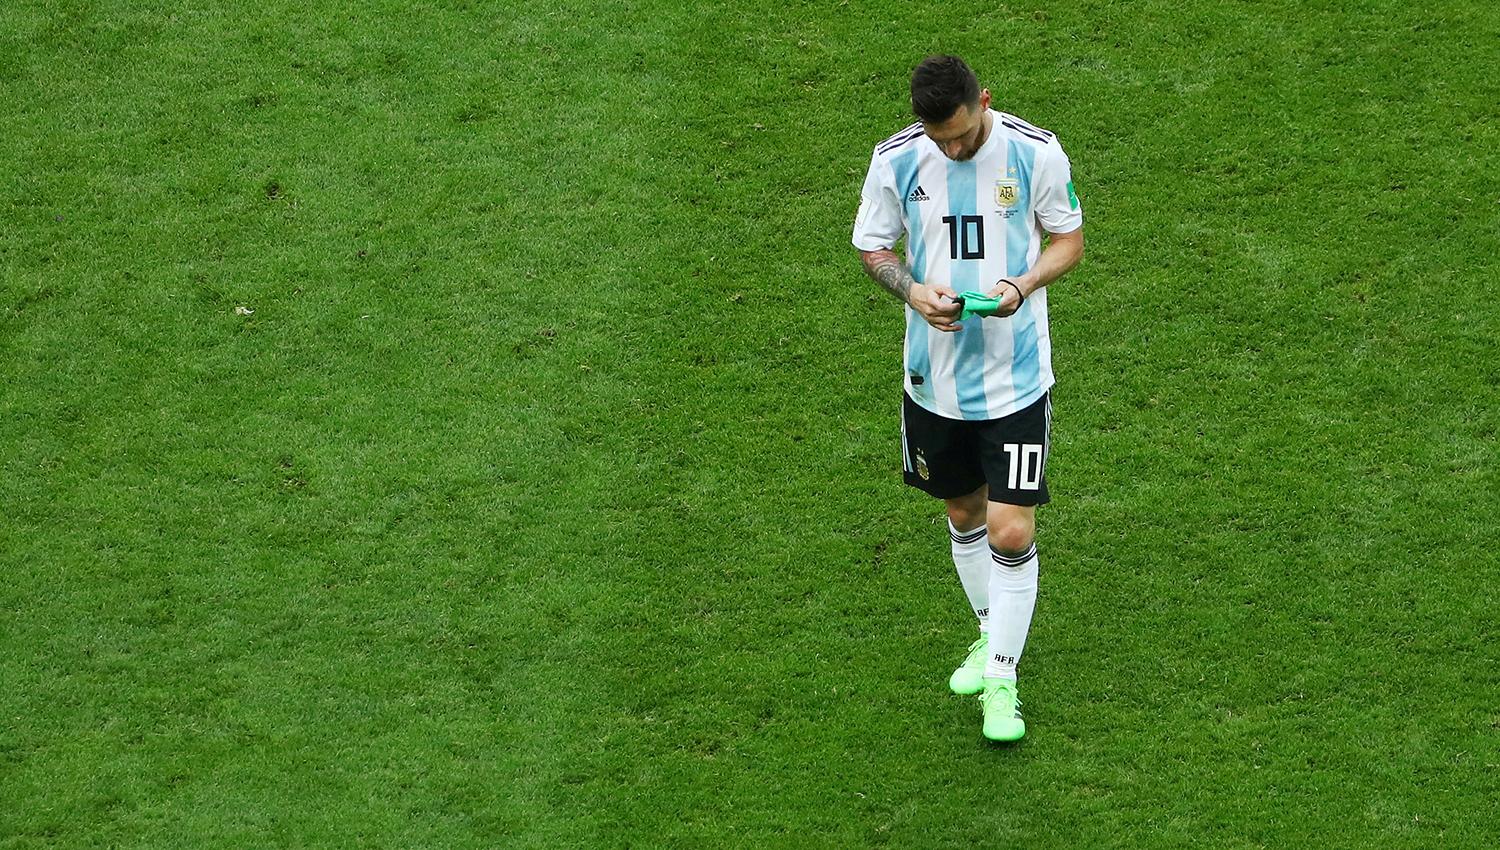 ¿Este fue el último Mundial de Messi?. Los hinchas claman por la renovación.
REUTERS